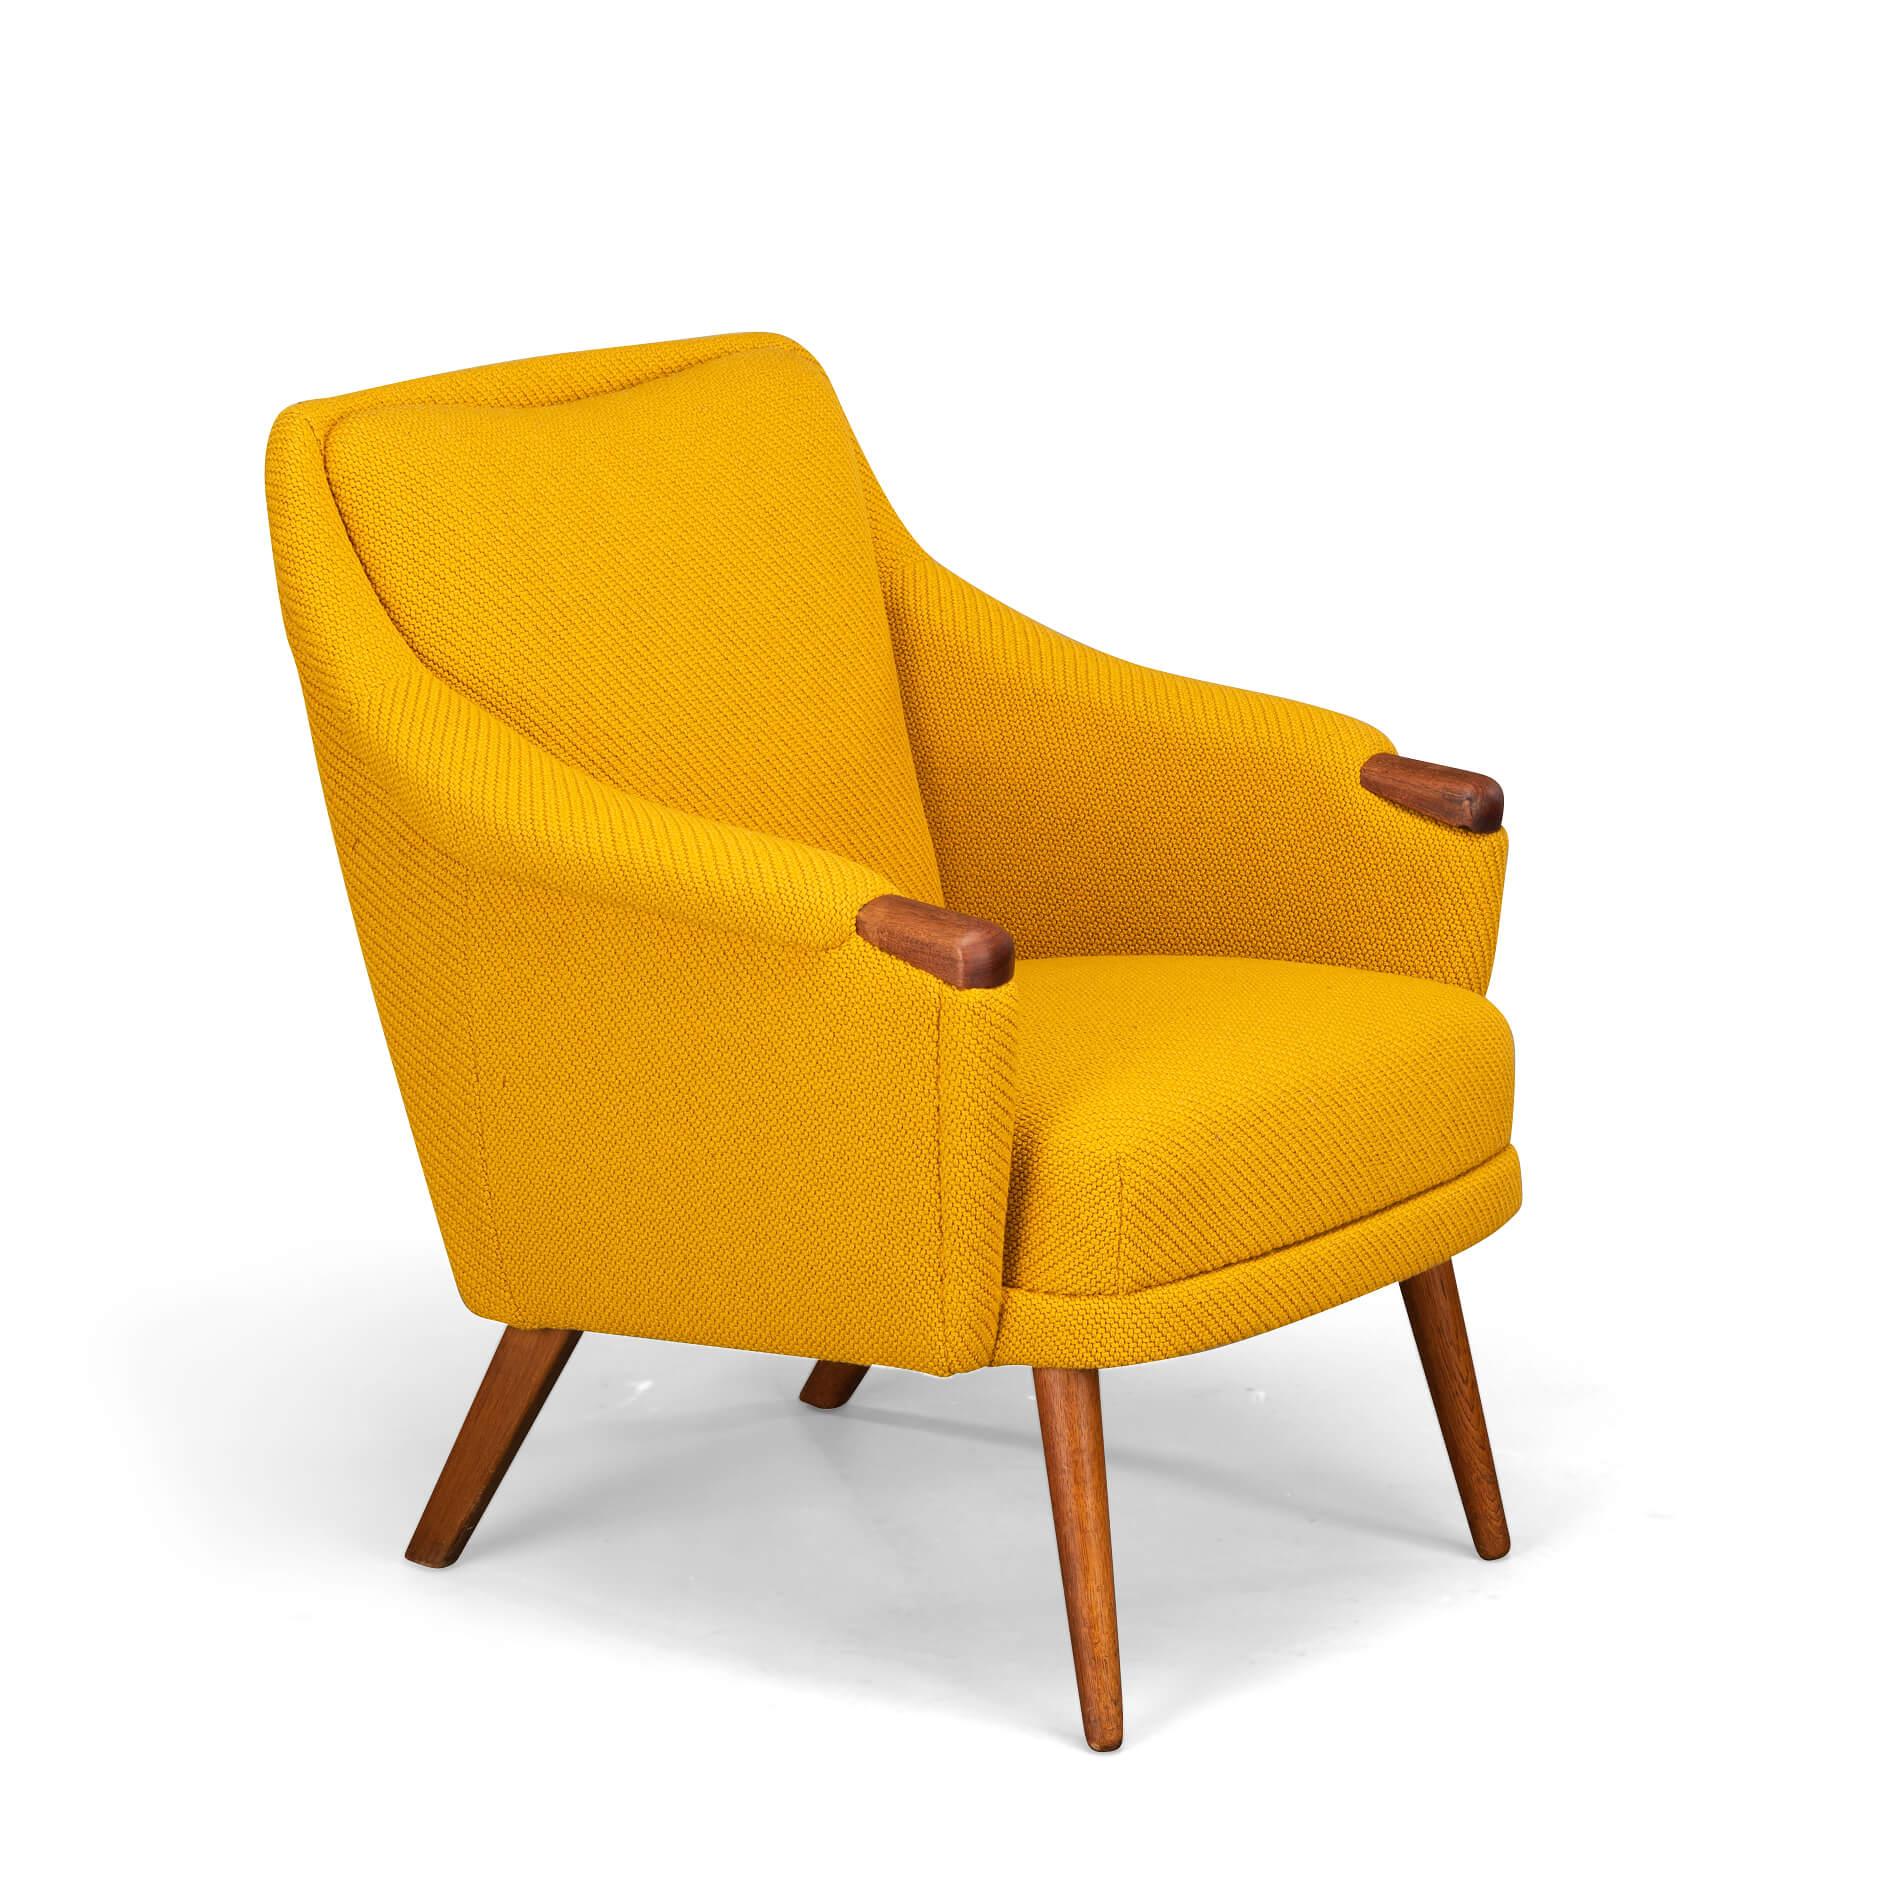 Le fauteuil de Johannes Andersen pour le CFC de Silkeborg est recouvert d'un superbe tissu neuf. Cette chaise a été retapissée avec Kvadrat, Coda 2, conformément à la tapisserie originale conçue par Andersen. Ce canapé possède un siège spacieux mais